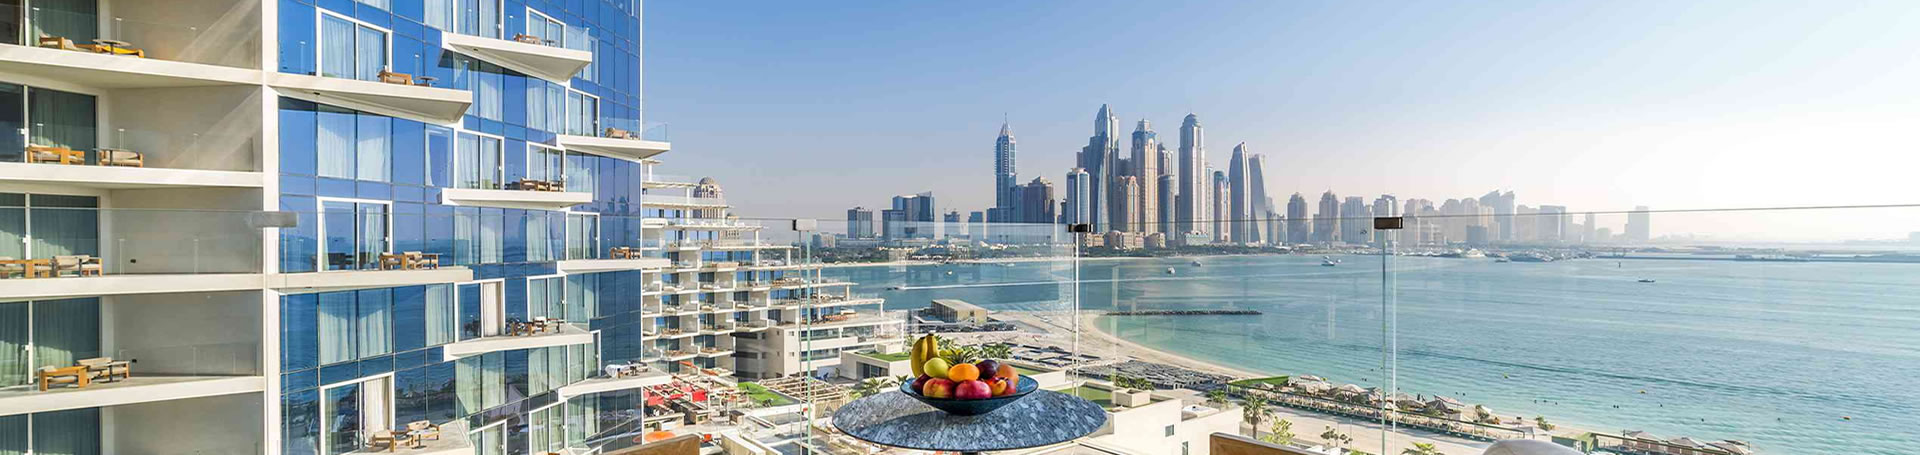 برای اقامت در دبی چه هتلی را انتخاب کنیم؟